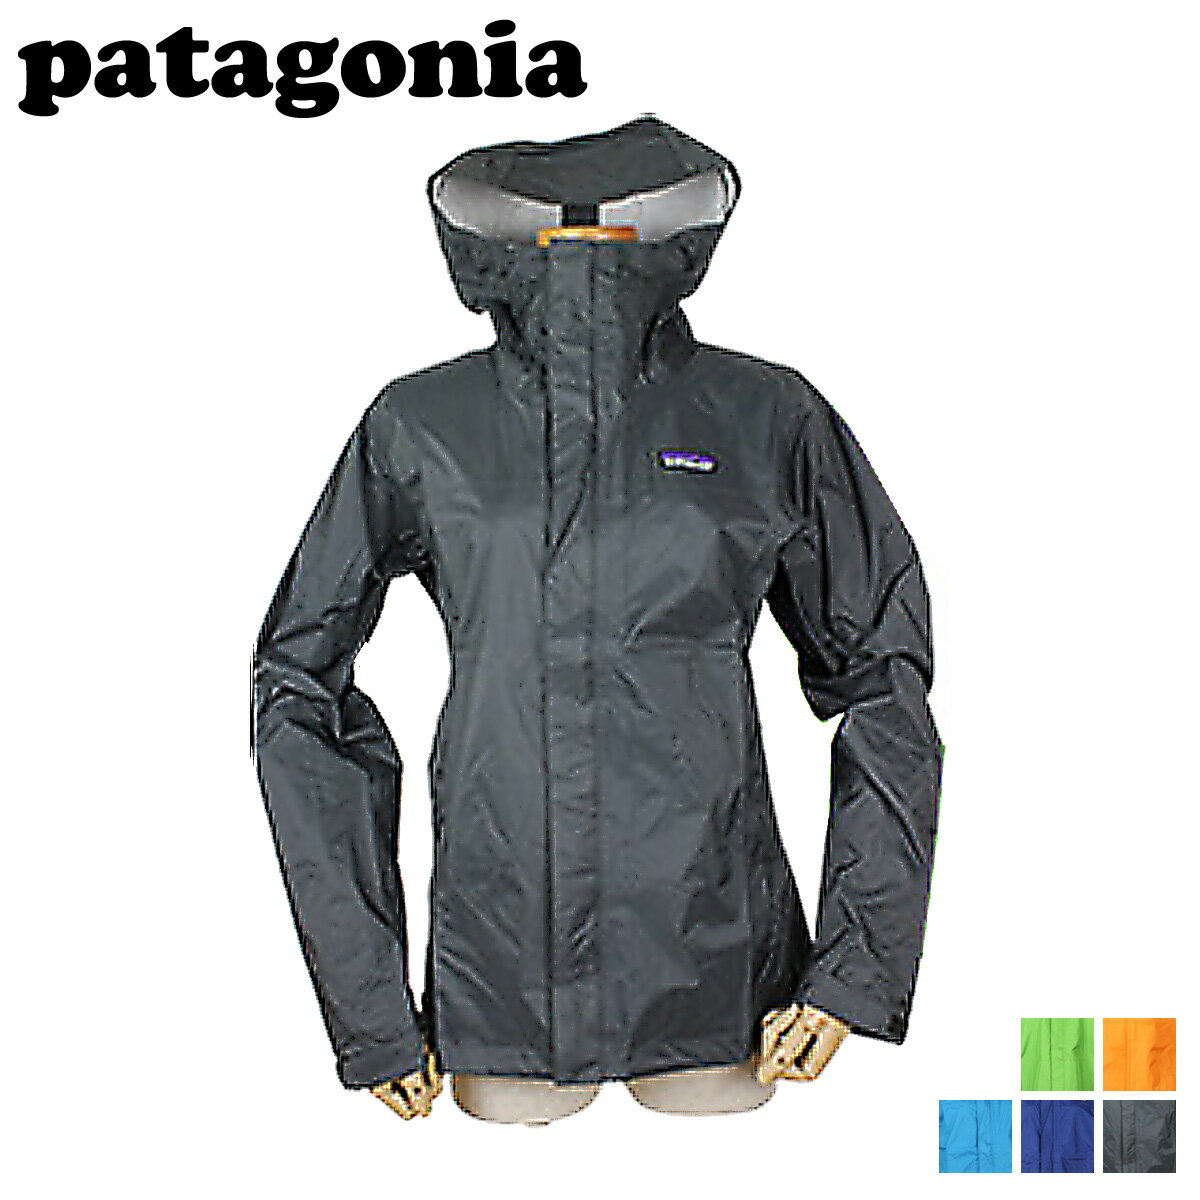 パタゴニア/patagonia/ マウンテンパーカー [5カラー]83800/レギュラーフィット/Men's Torrentshell Jacket/ナイロン/メンズ[6/16 追加入荷][あす楽/正規]★送料無料★パタゴニア patagonia